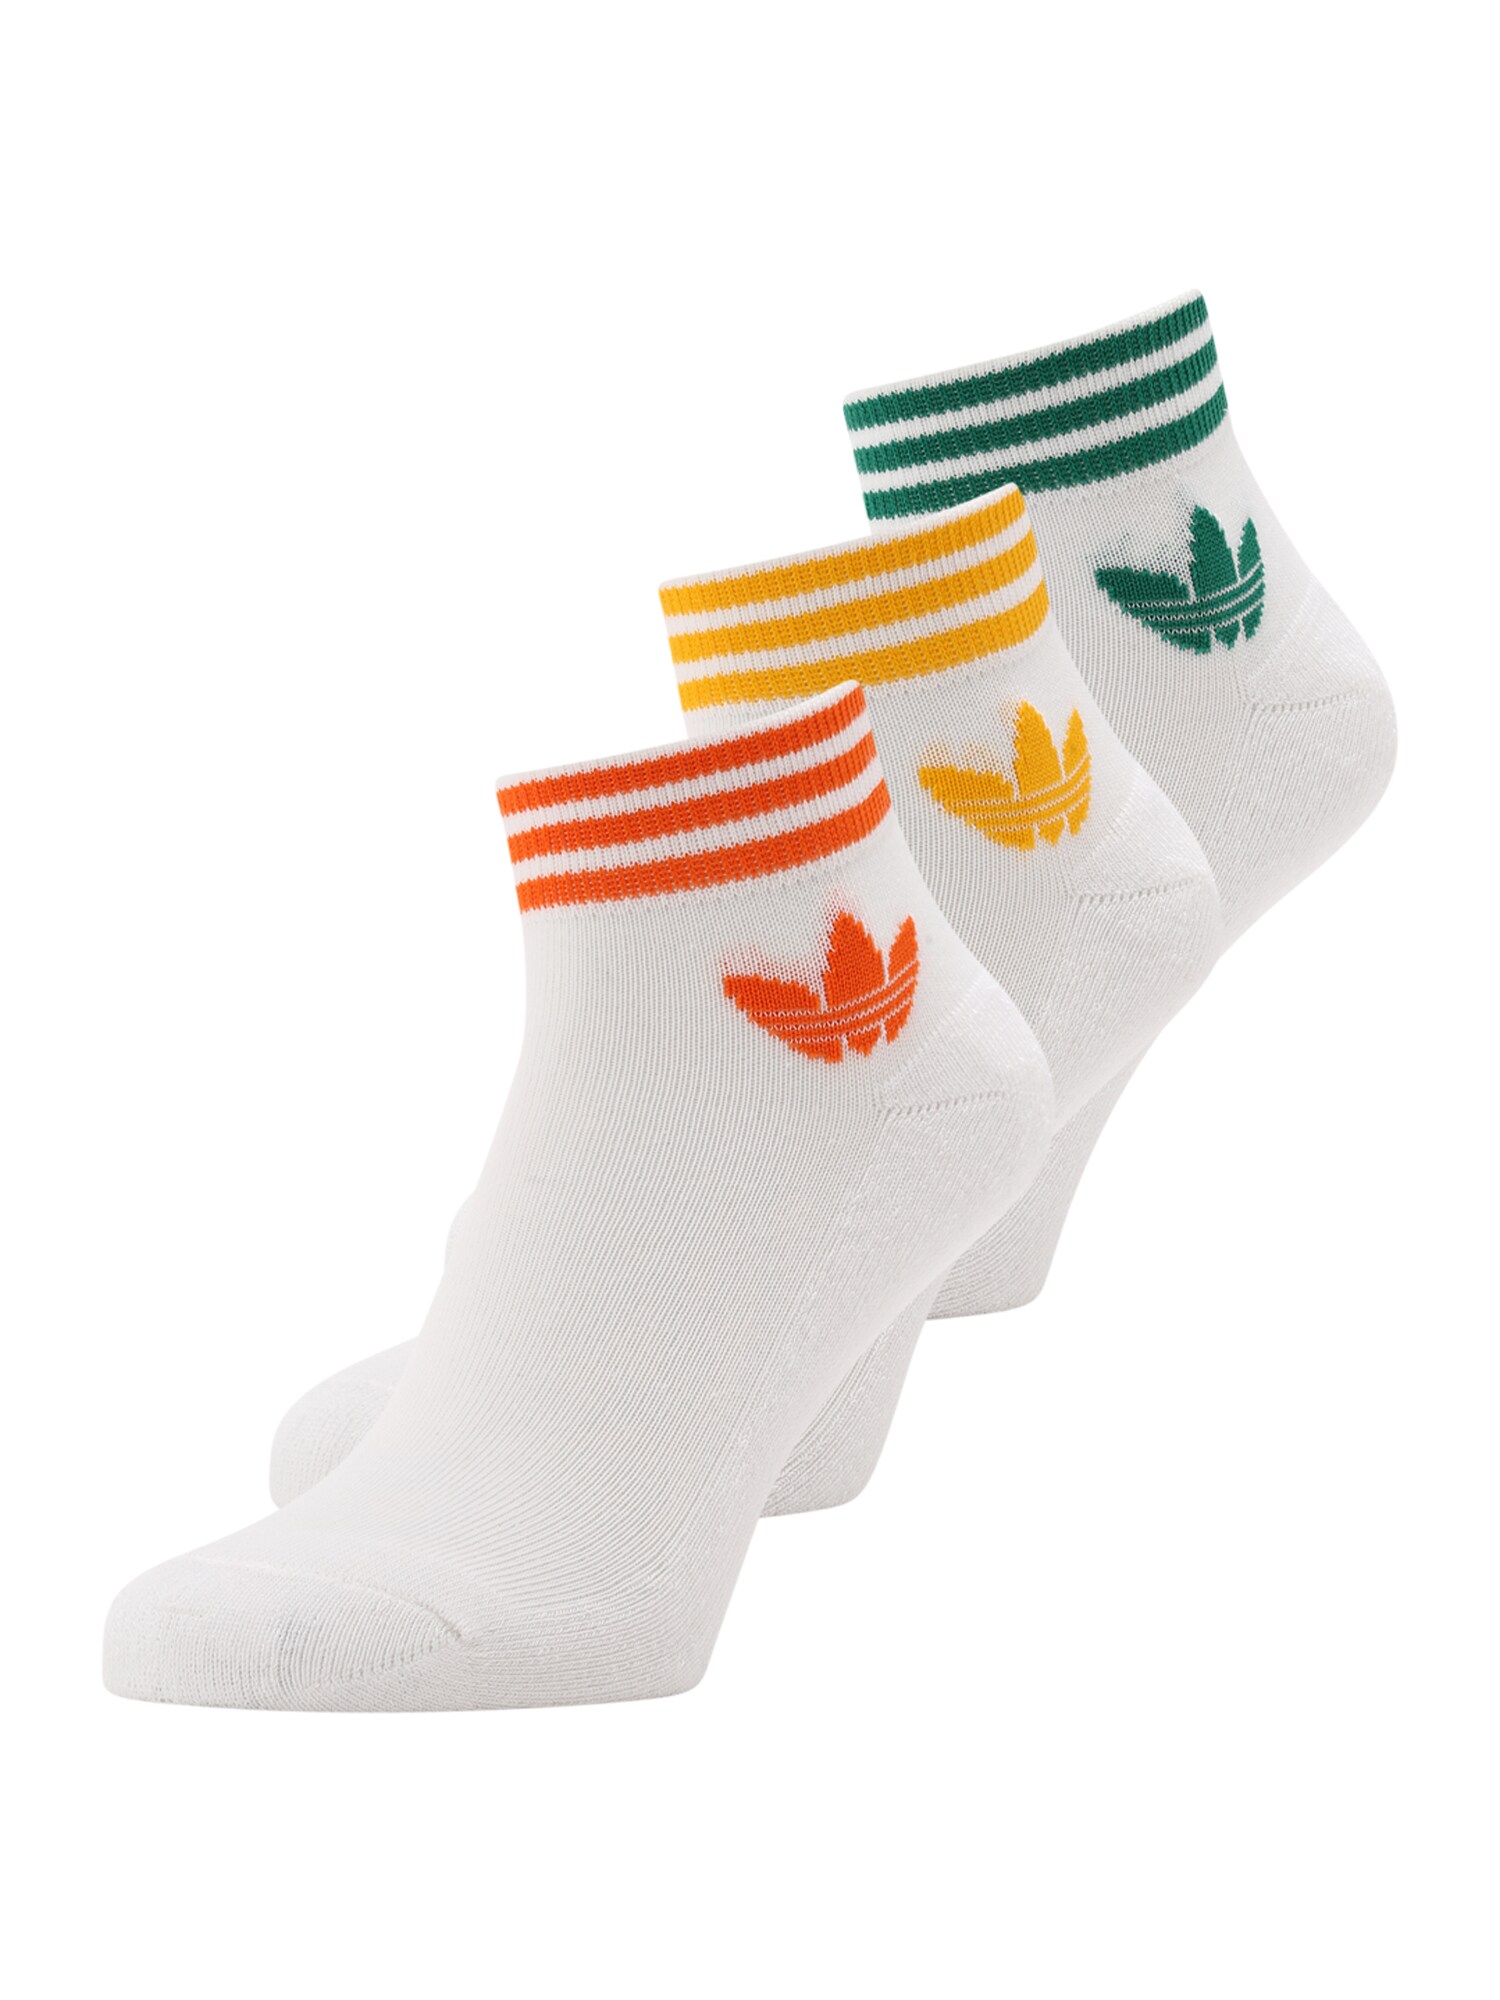 ADIDAS ORIGINALS Ponožky 'Island Club'  žltá / zelená / oranžová / biela